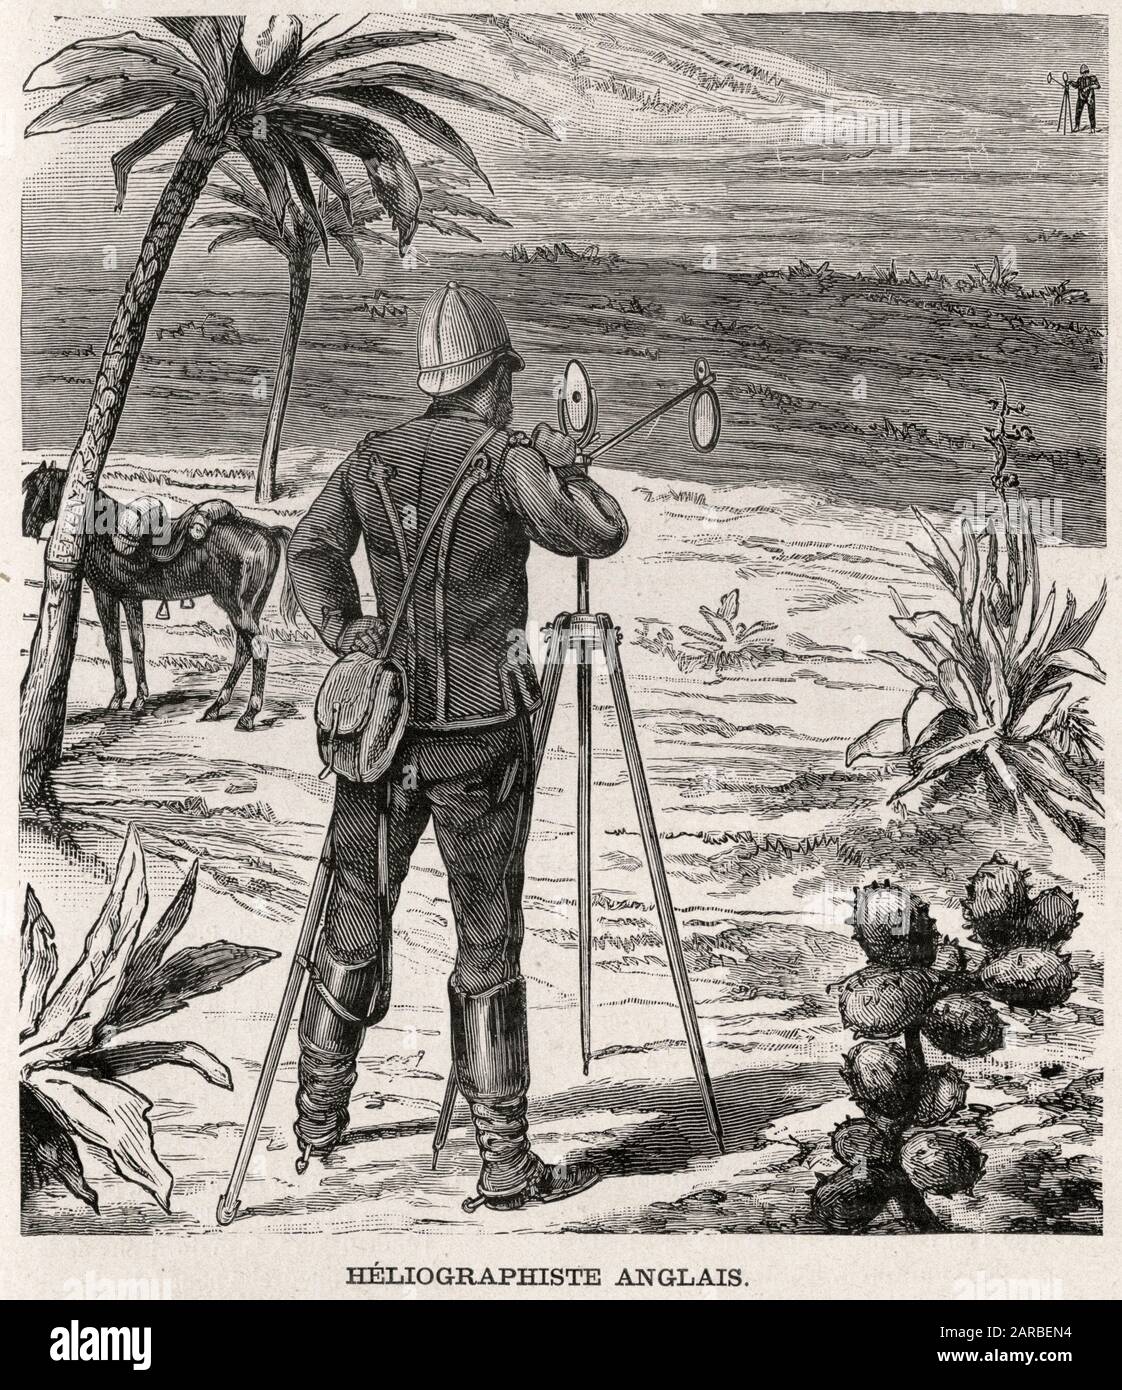 Eliografo utilizzato dall'esercito britannico in Africa Foto Stock